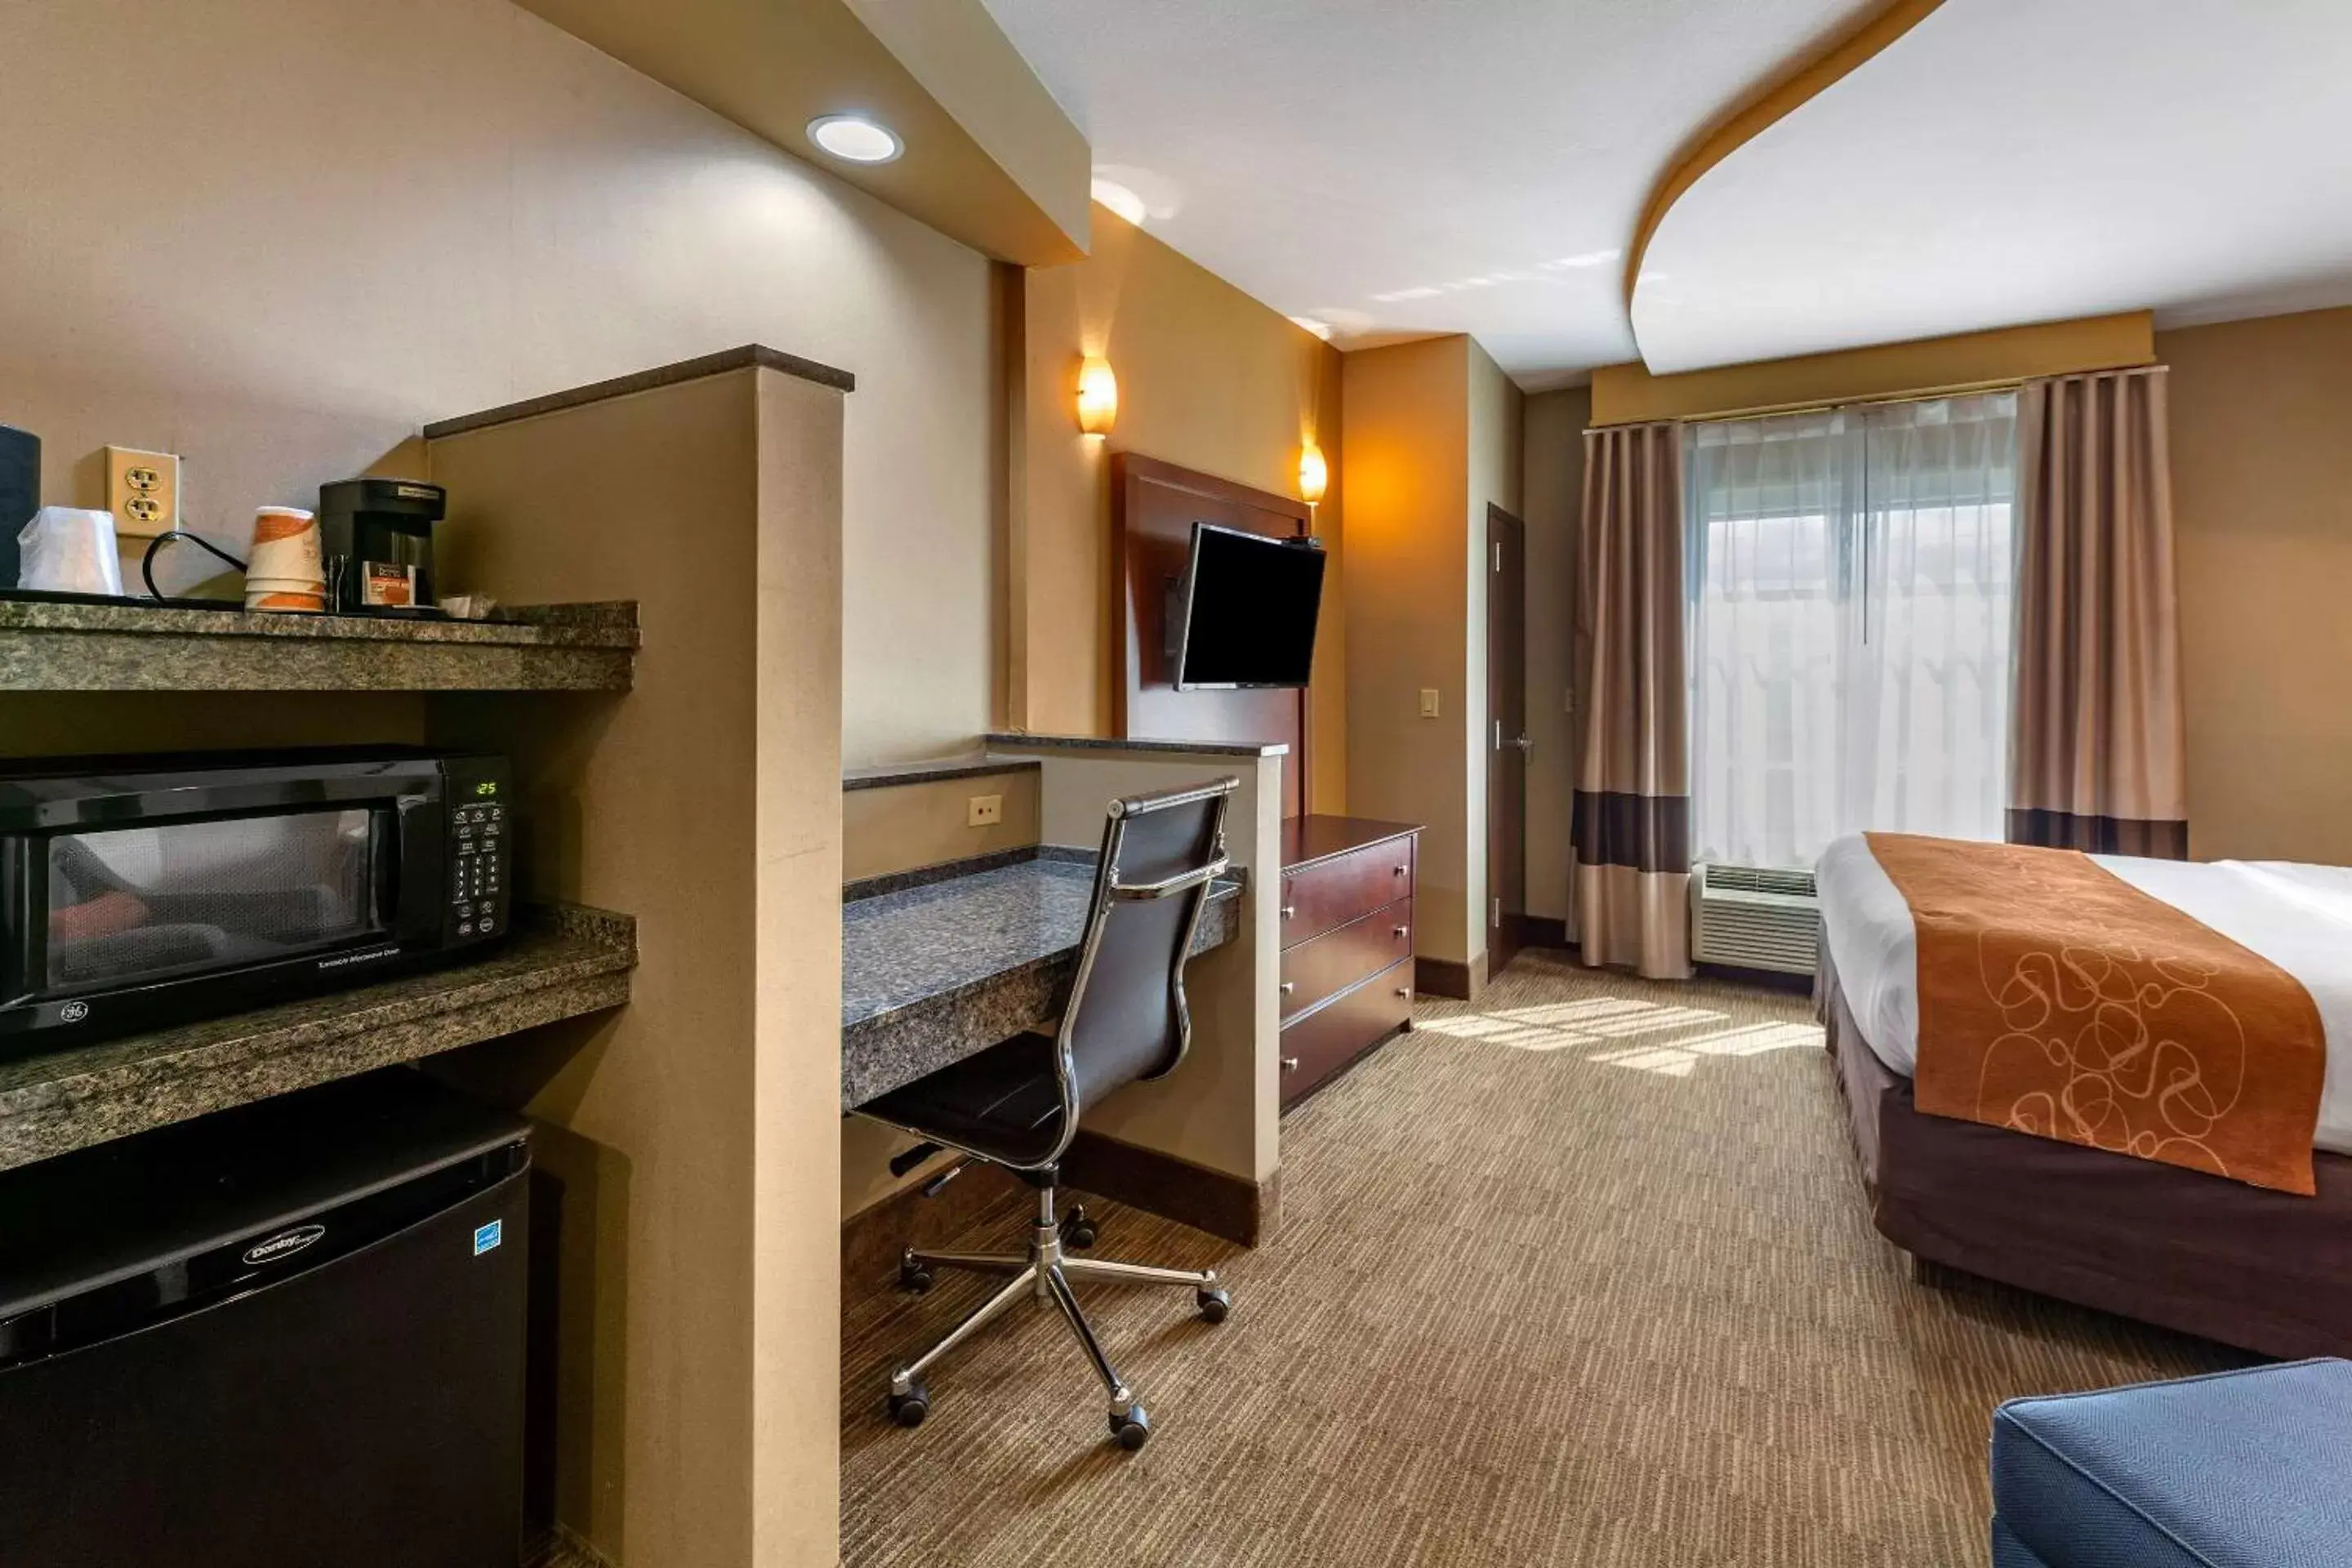 Bedroom, TV/Entertainment Center in Comfort Suites Perrysburg